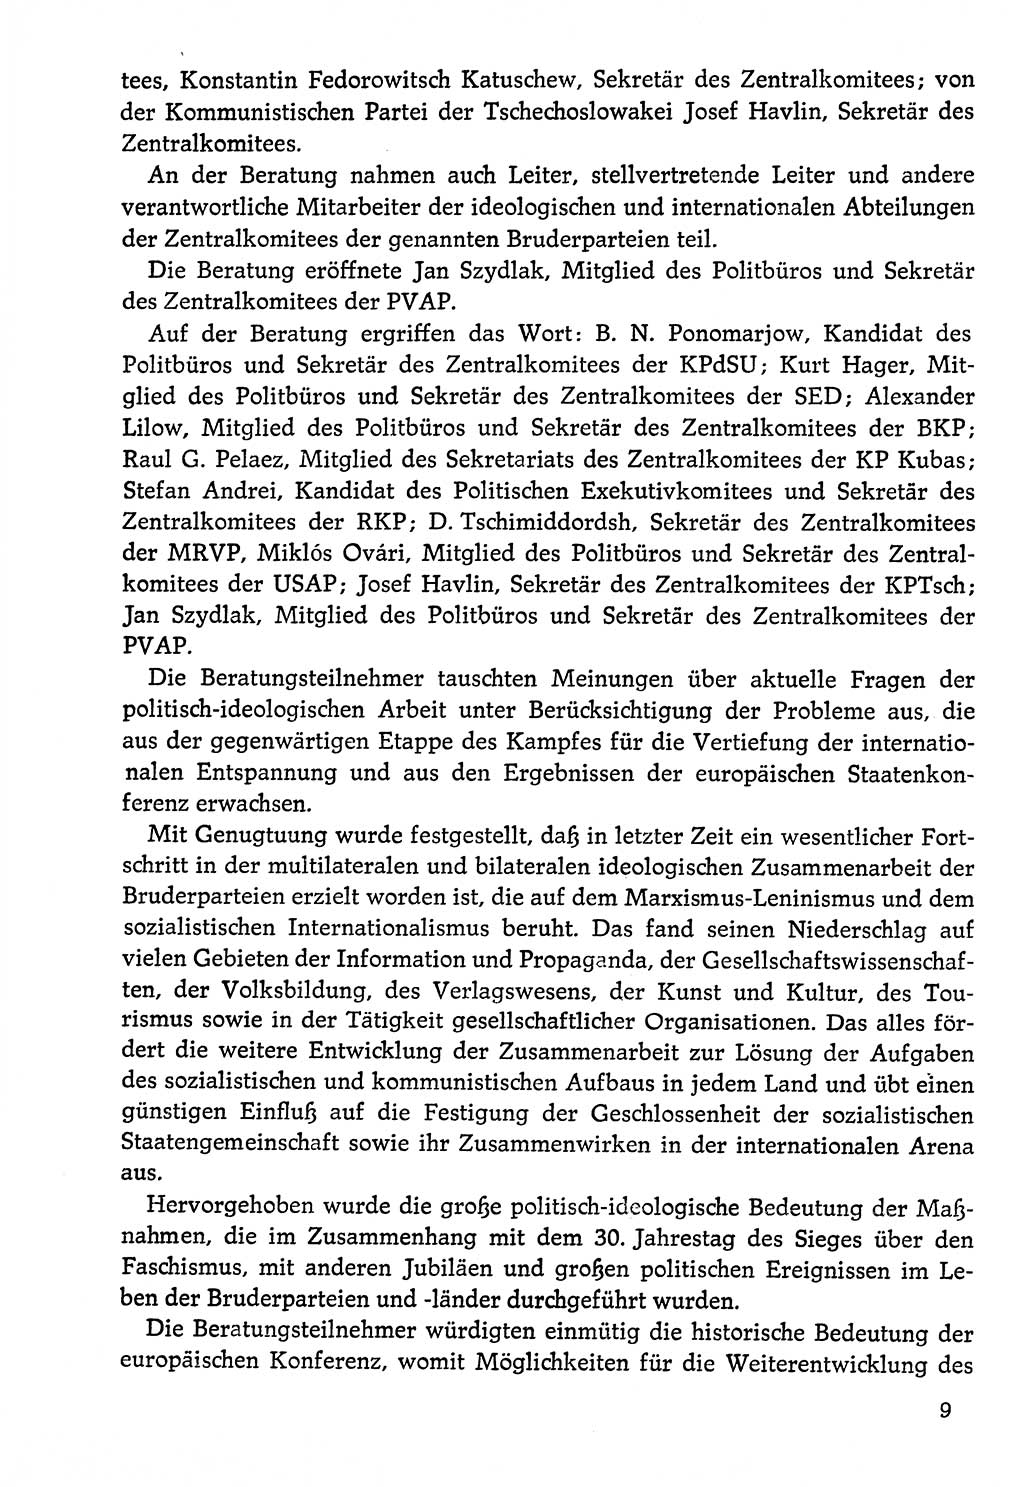 Dokumente der Sozialistischen Einheitspartei Deutschlands (SED) [Deutsche Demokratische Republik (DDR)] 1976-1977, Seite 9 (Dok. SED DDR 1976-1977, S. 9)